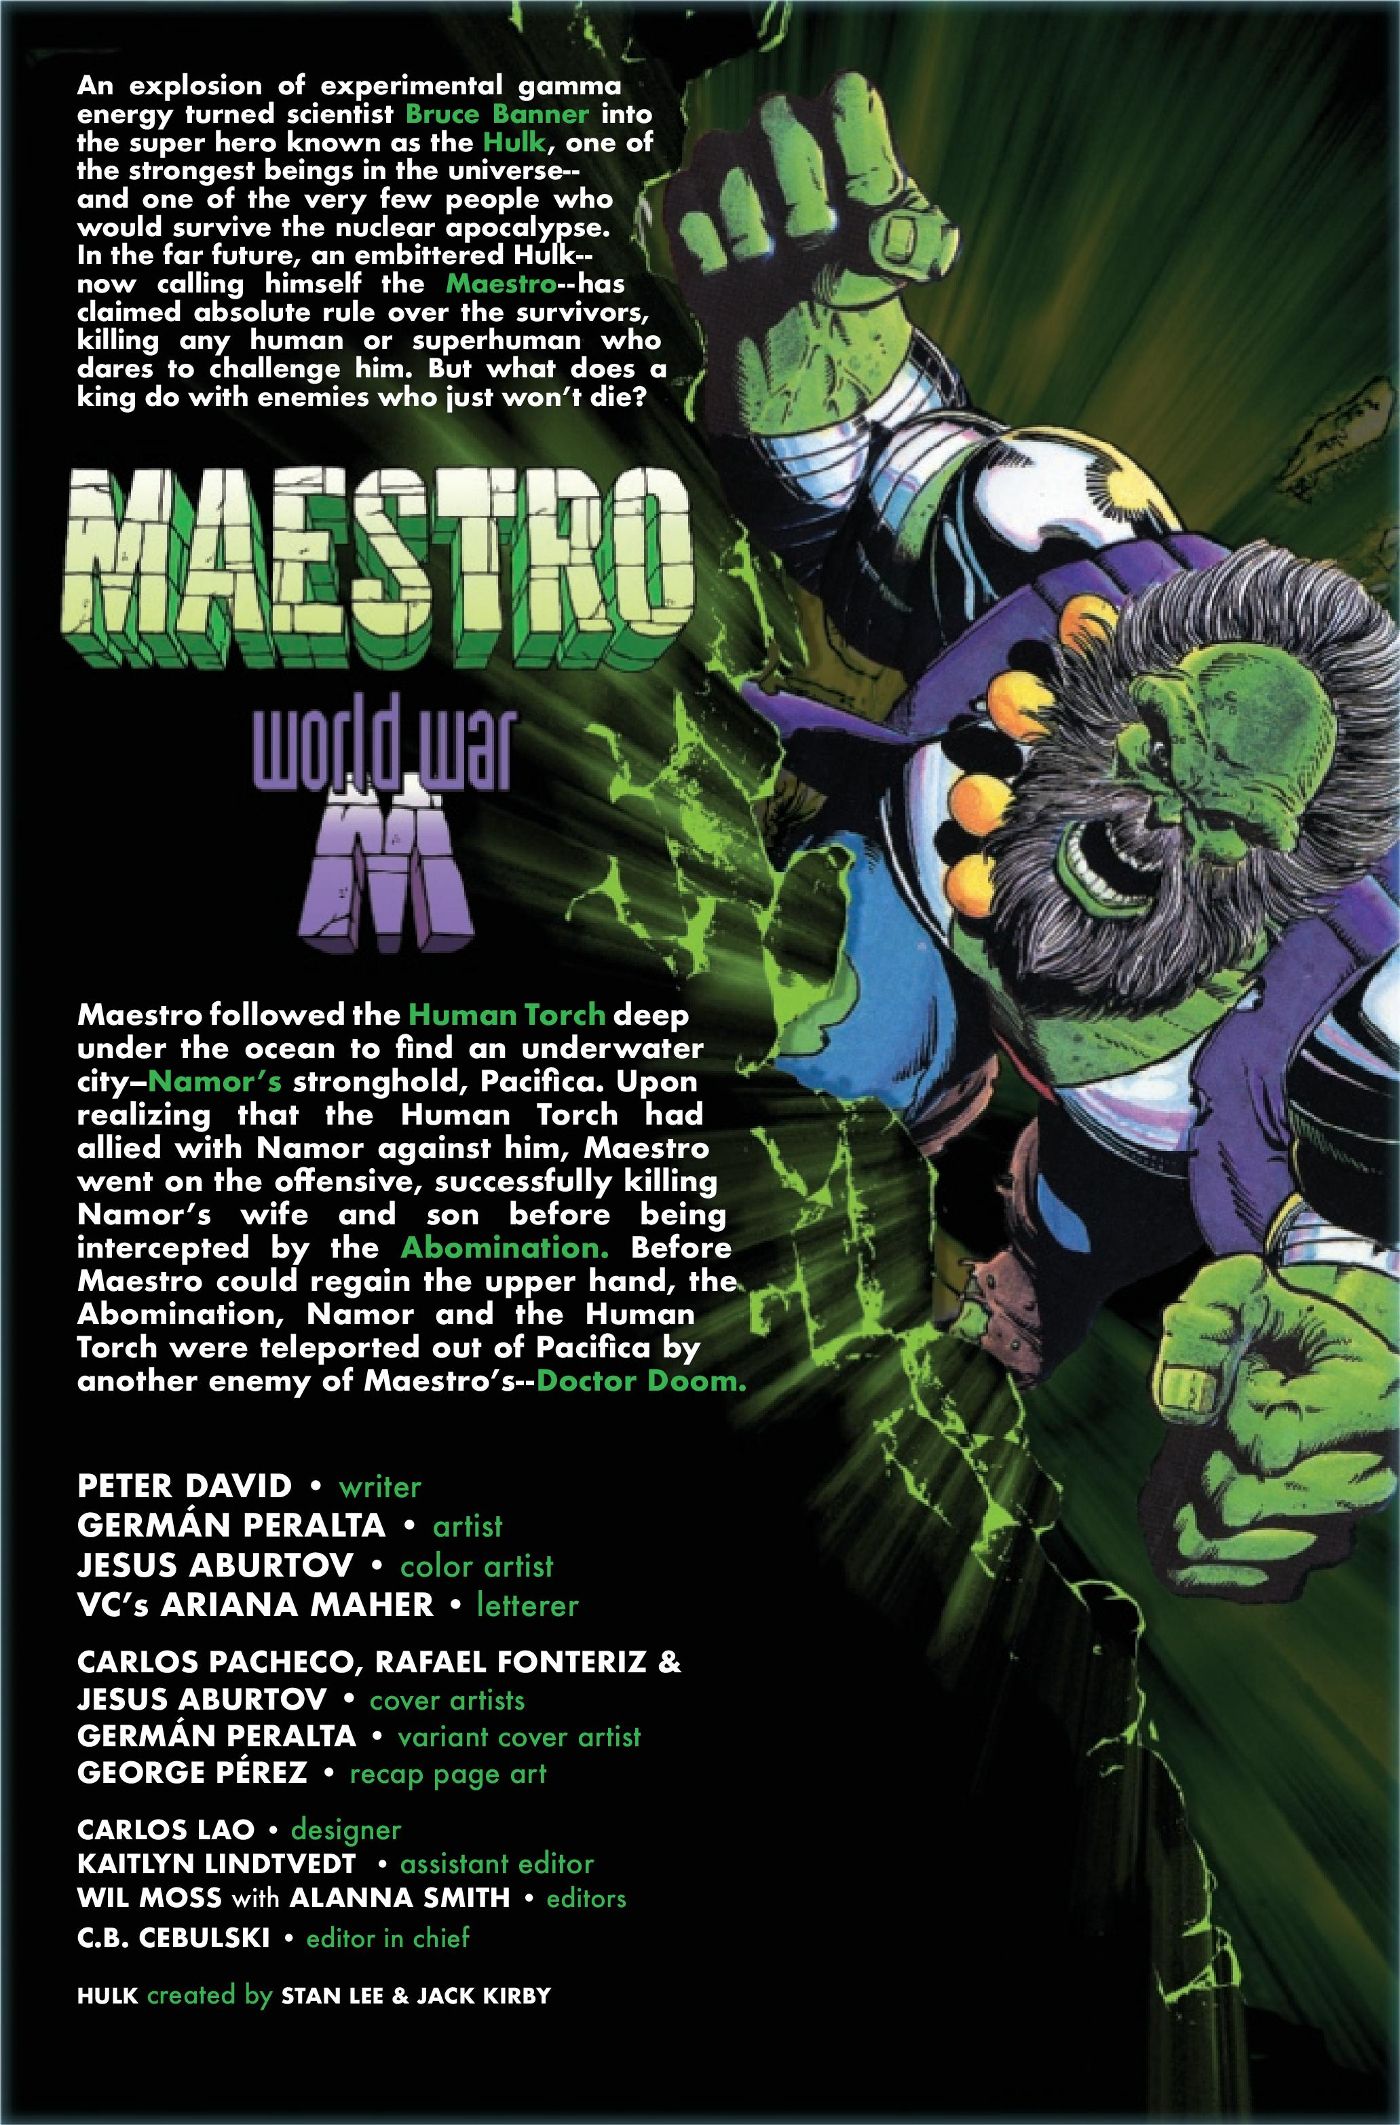 Hulk maestro world war m 3 page 1